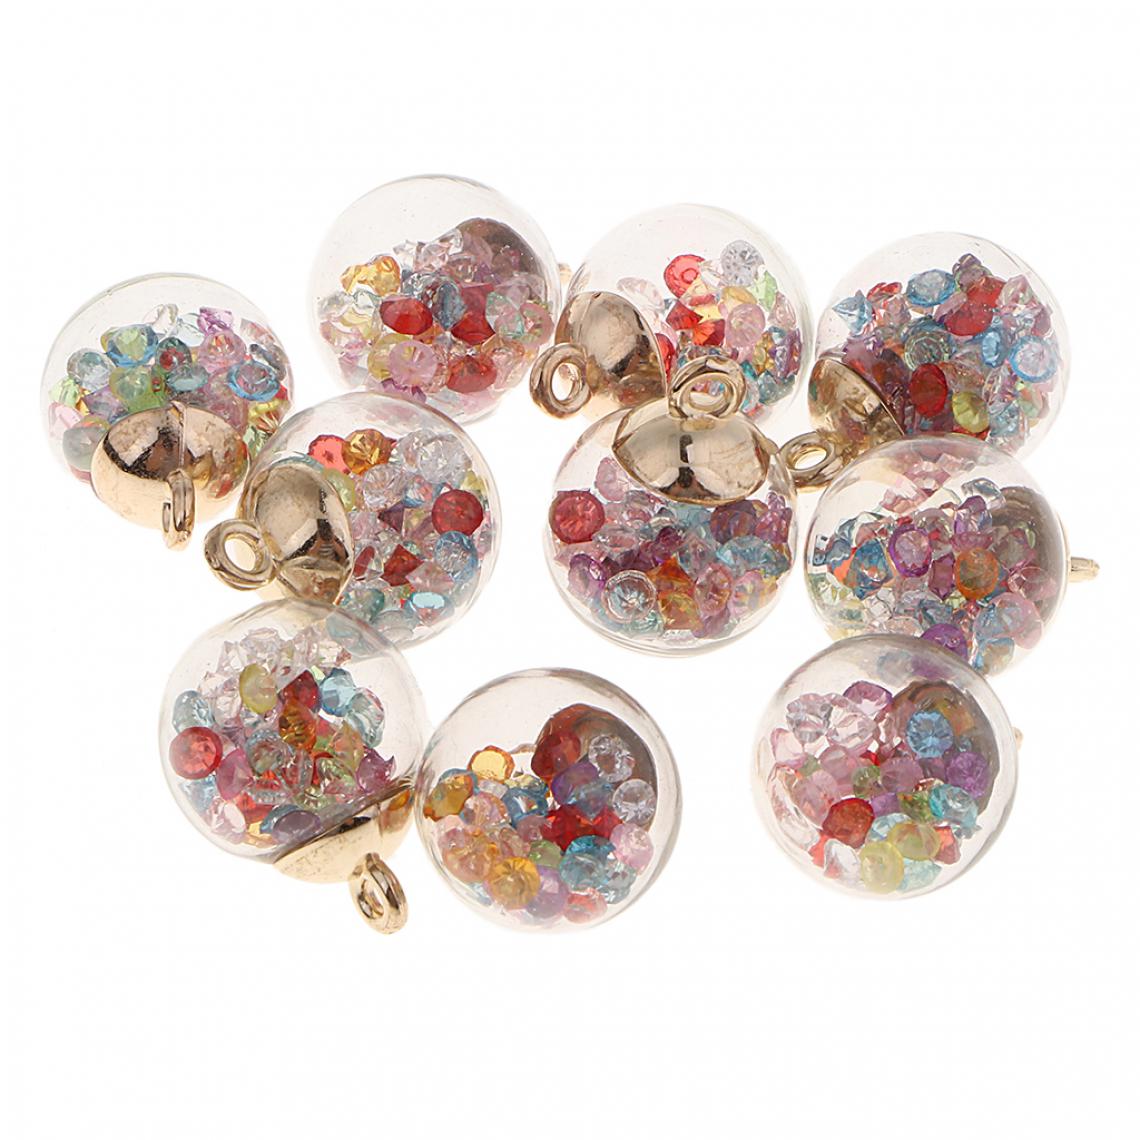 marque generique - 10pcs cristal verre boule charmes brillant strass bijoux pendentif rose - Perles